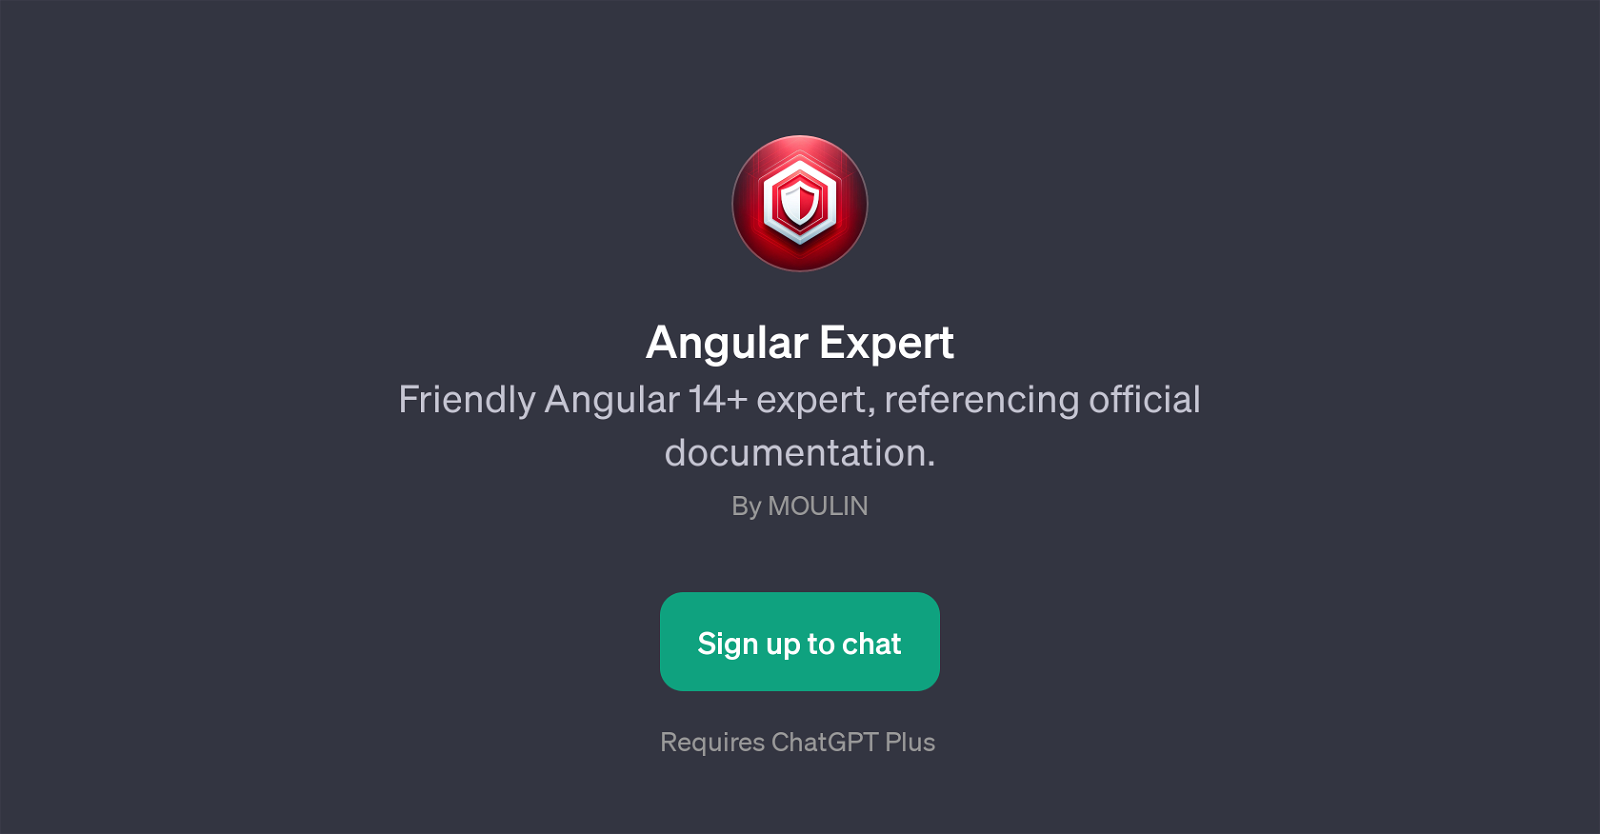 Angular Expert website